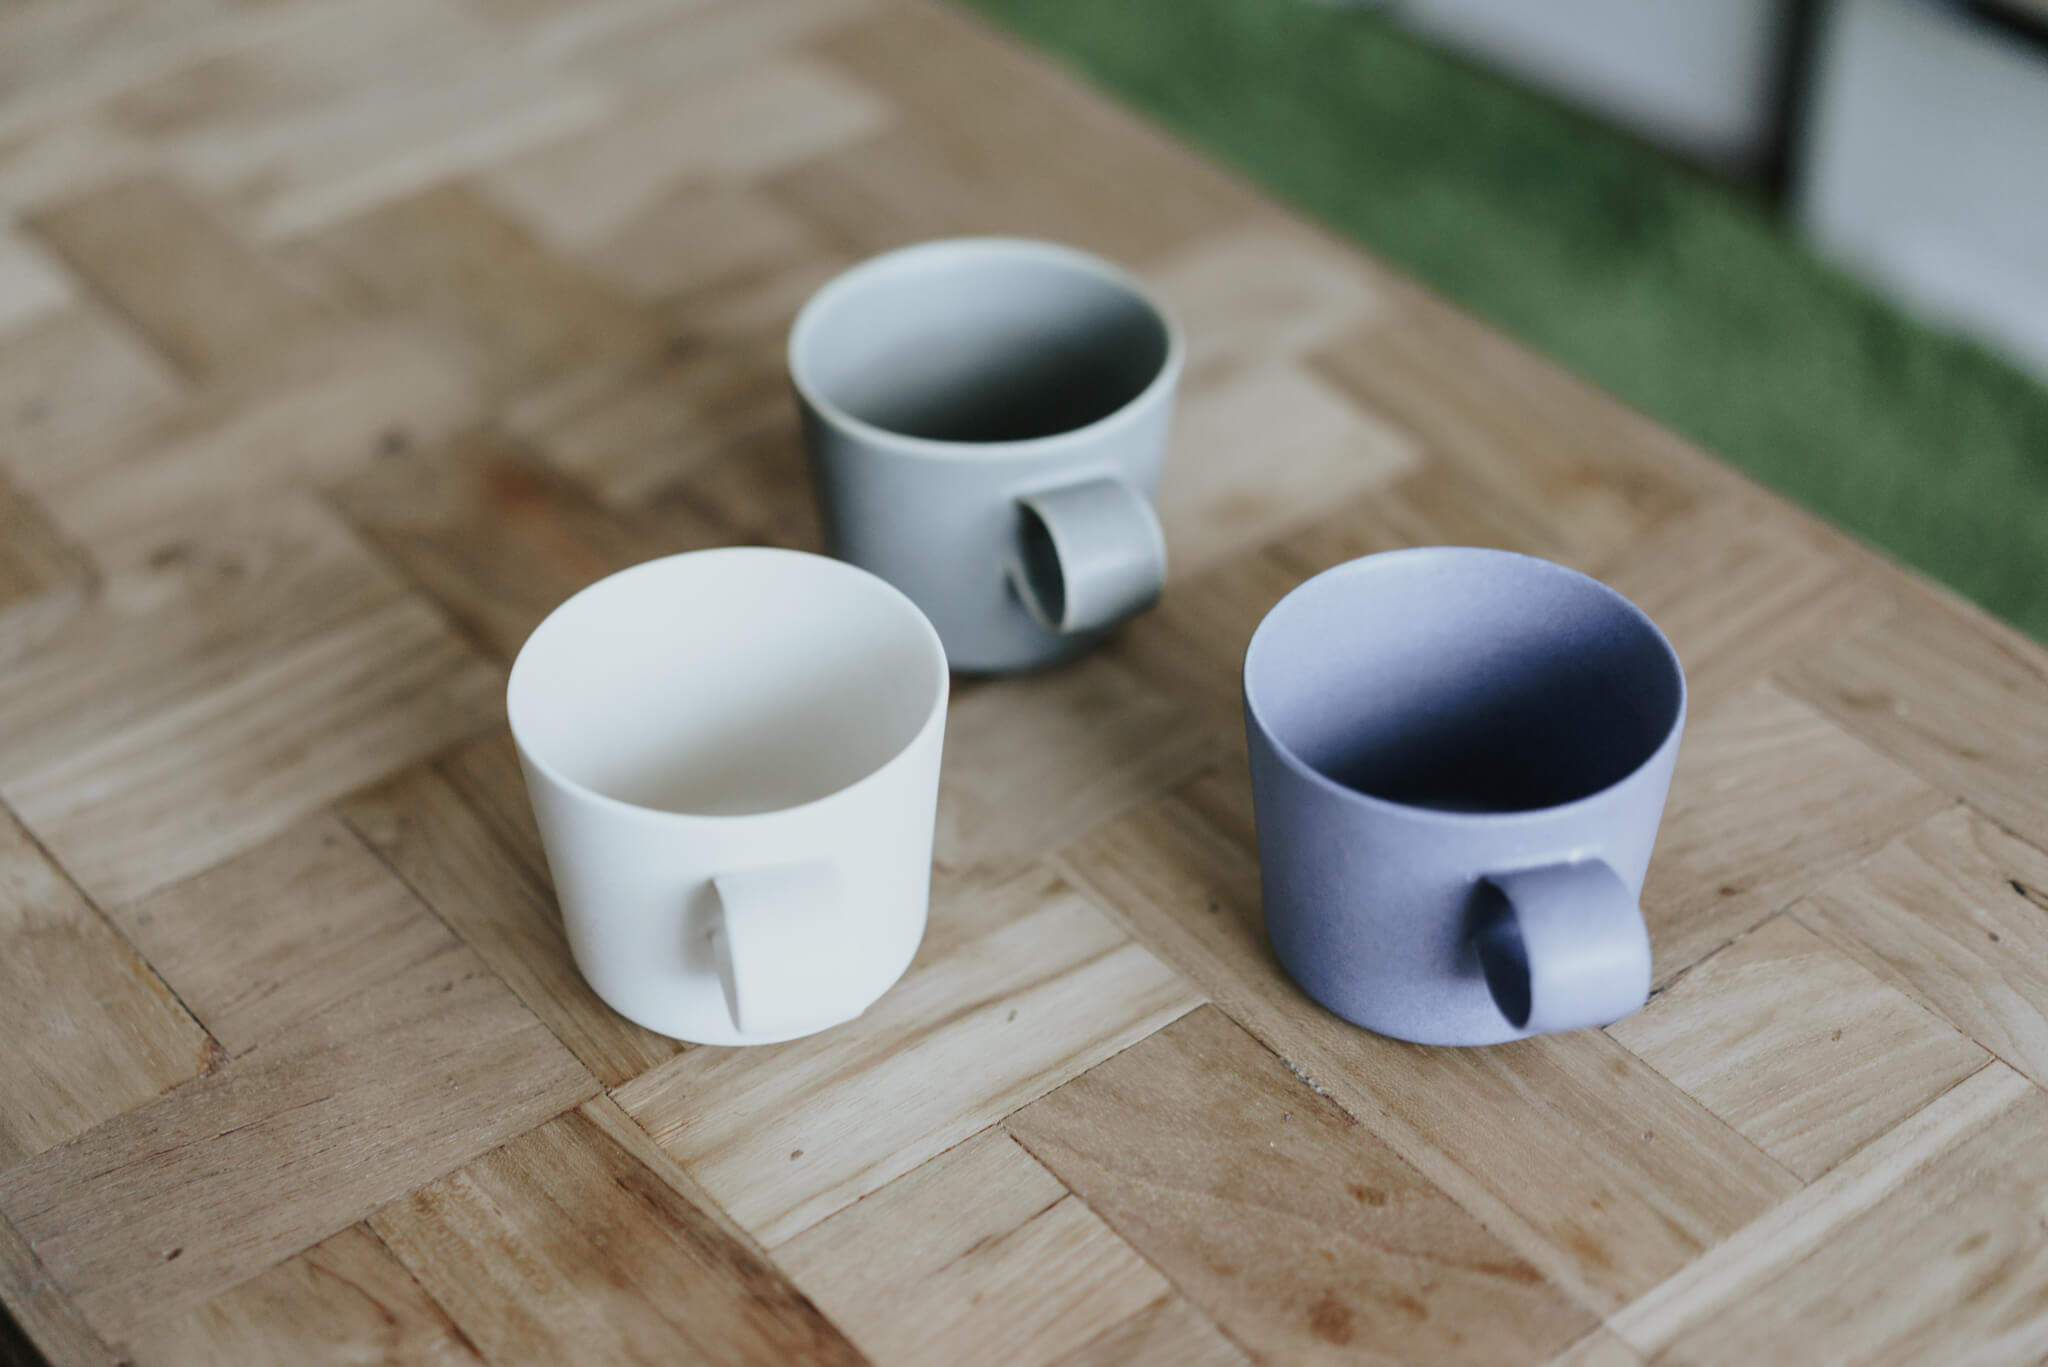 独特のデザインやカラー、質感がつい集めたくなるイイホシユミコさんの器。こちらは「unjour」シリーズのマグカップです。